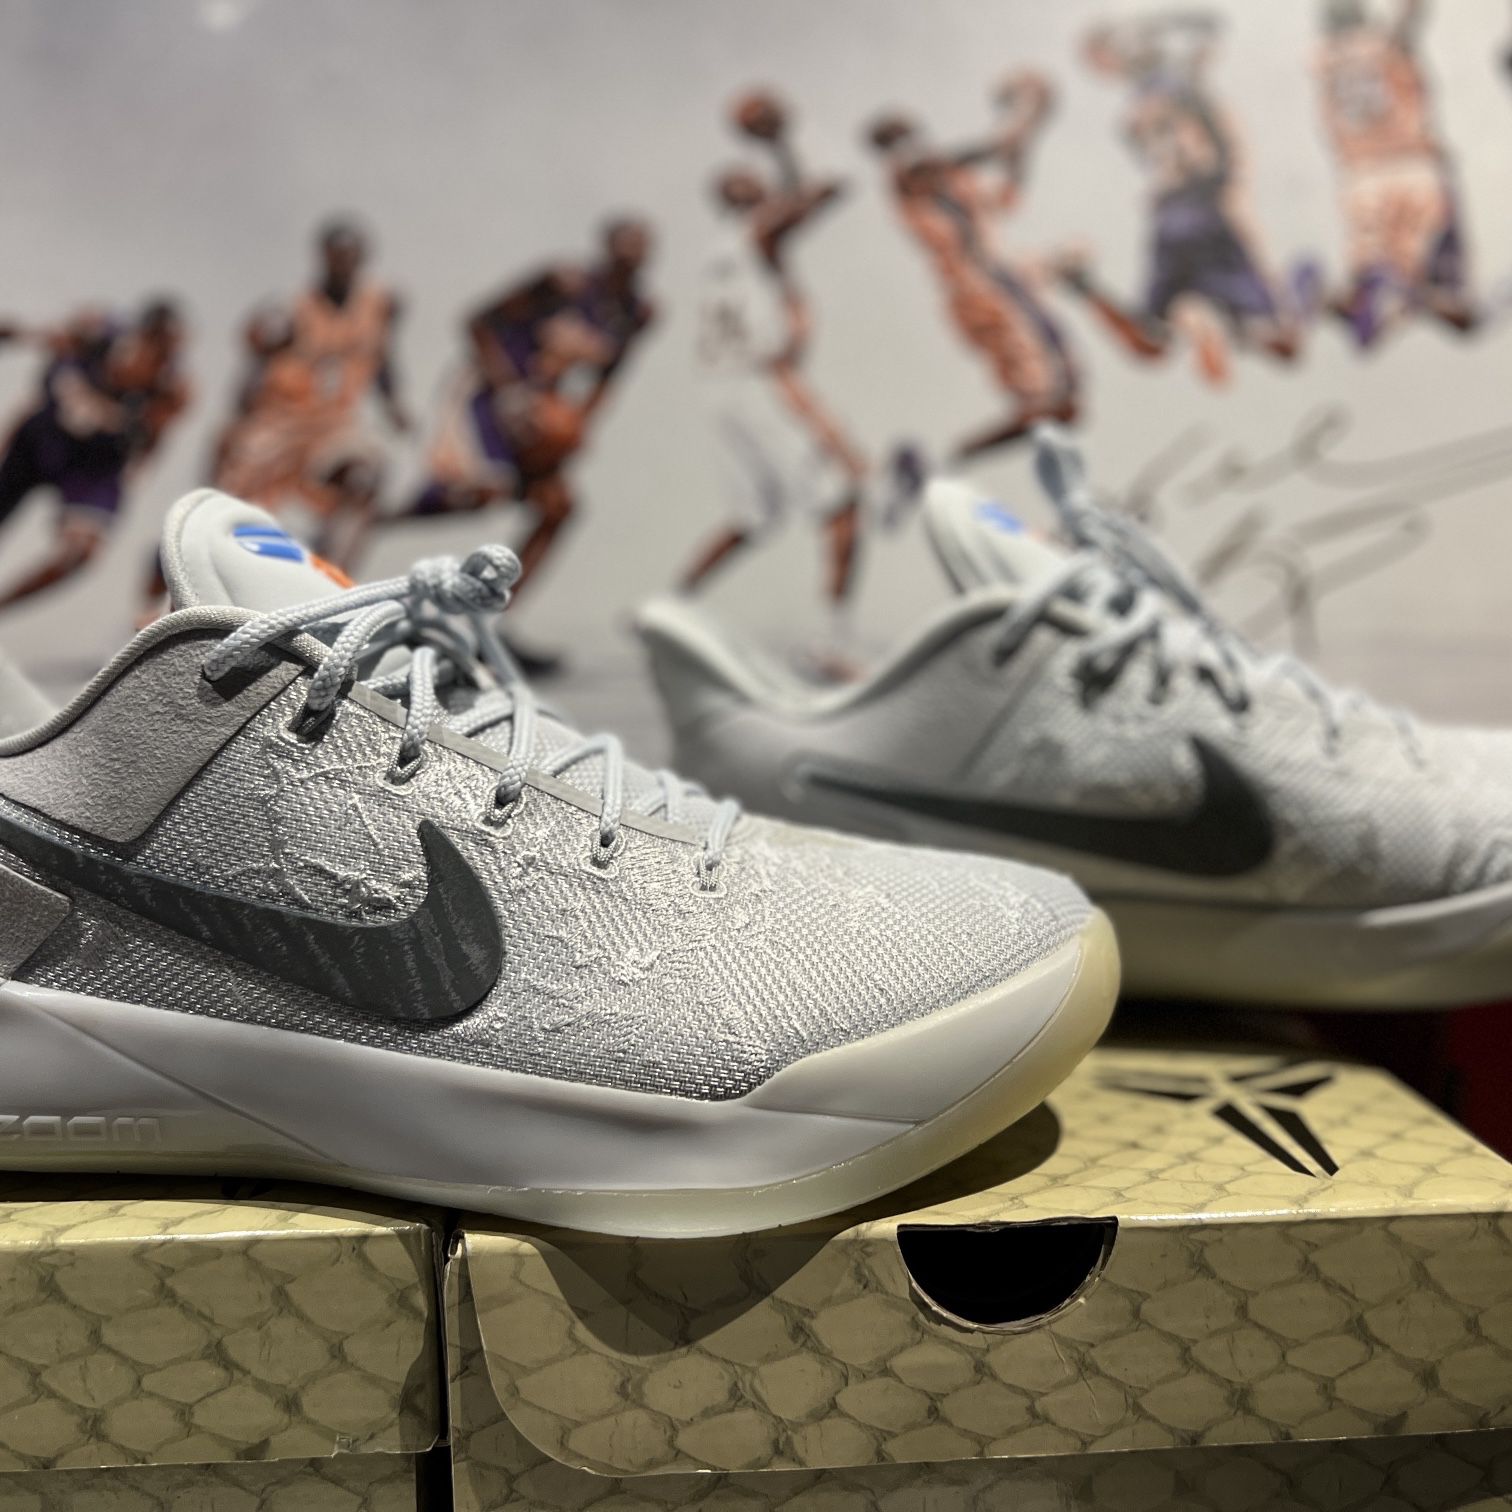 Nike Kobe A.D. DeMar DeRozan Compton PE